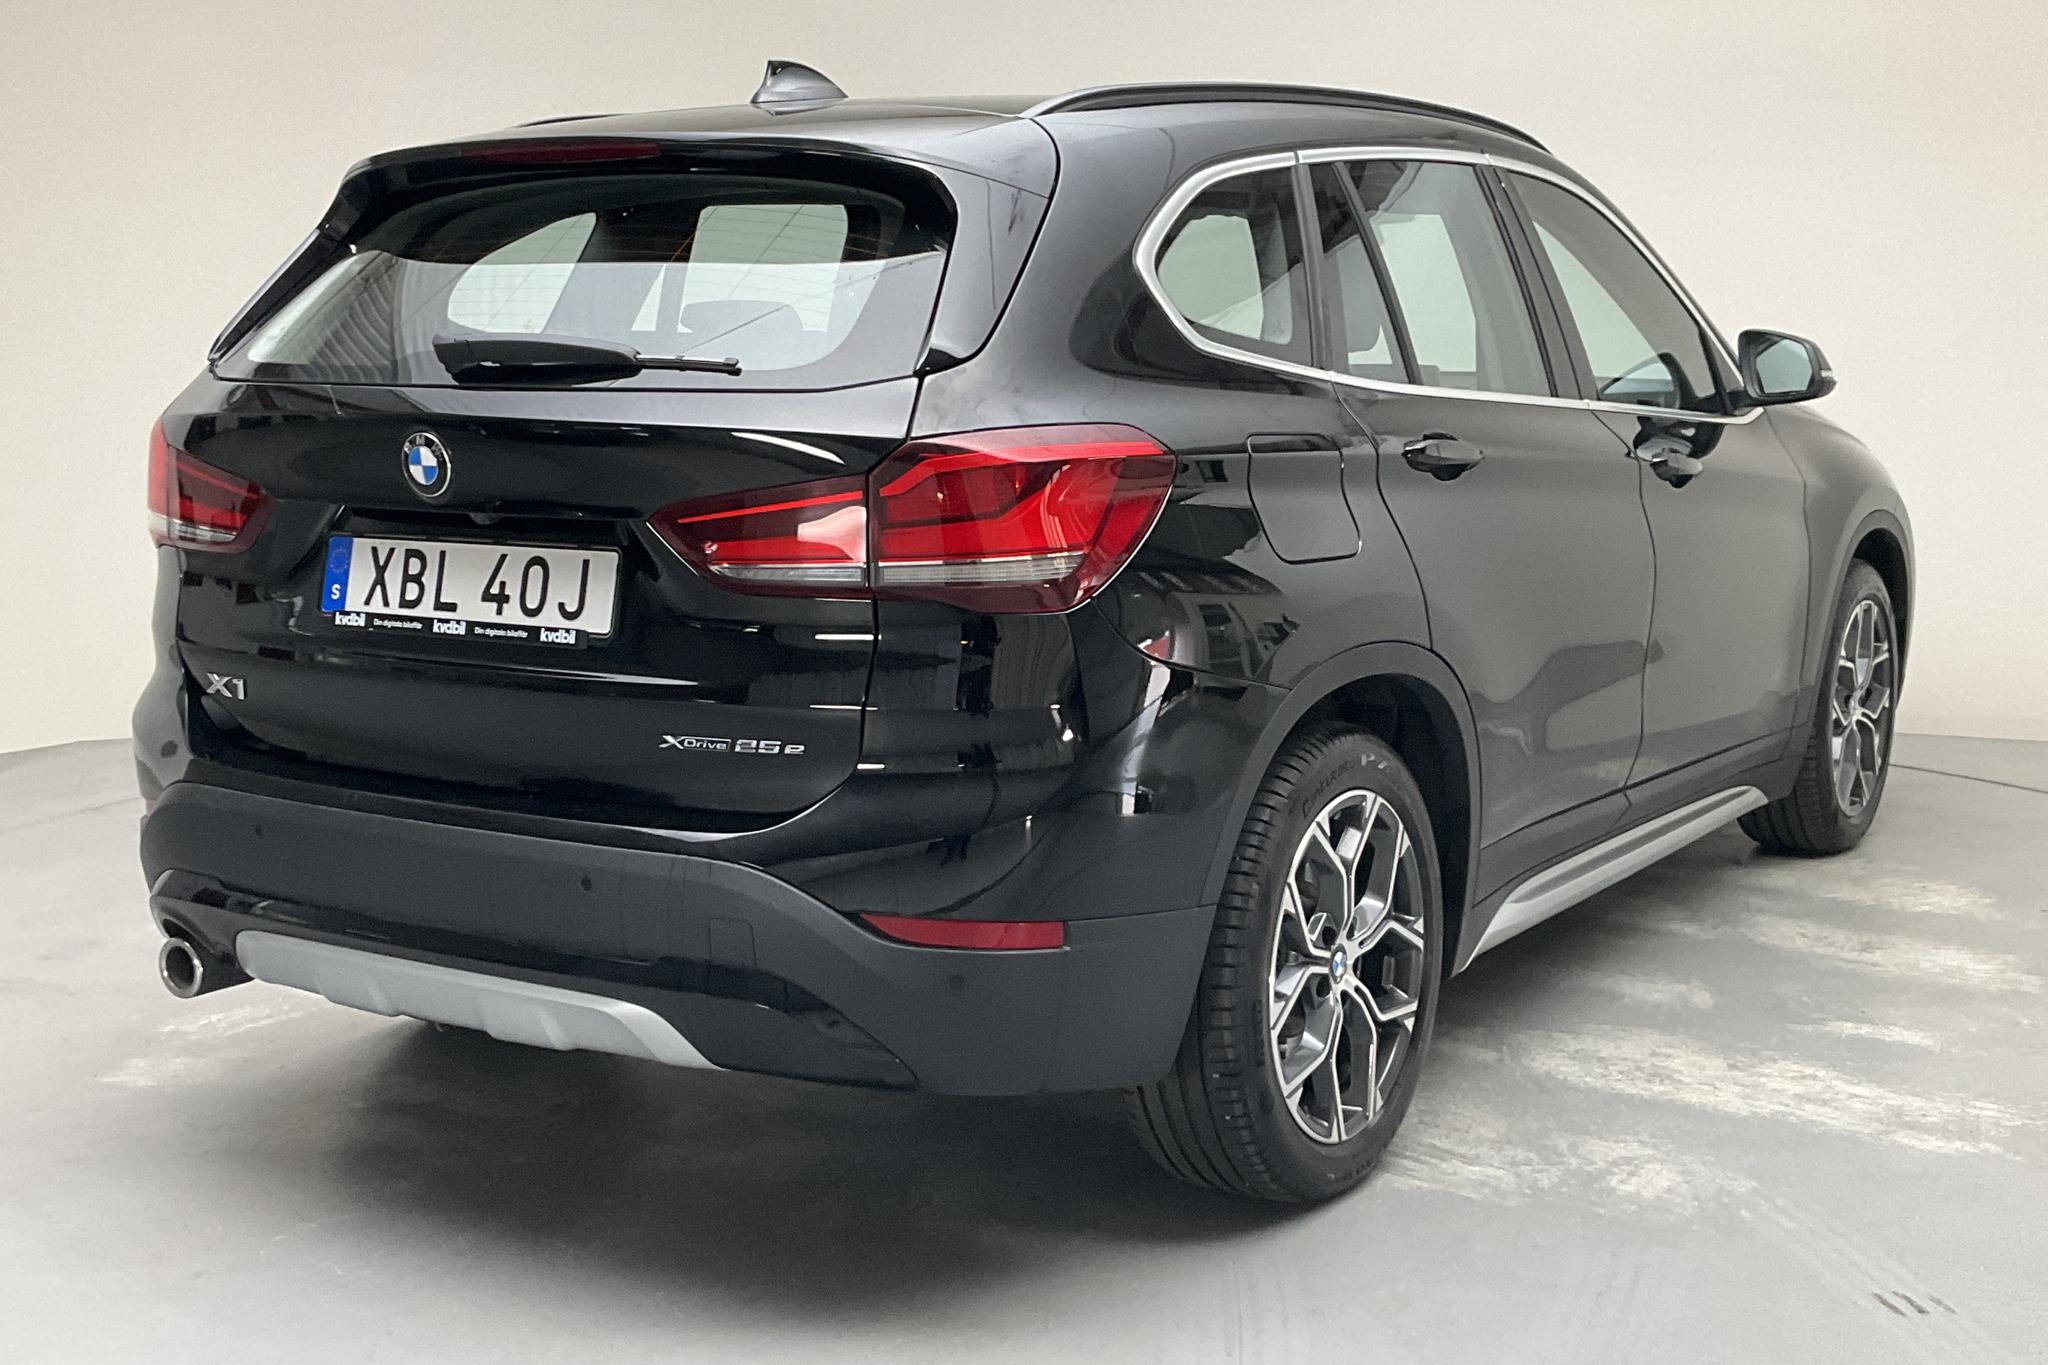 BMW X1 xDrive25e 9,7 kWh LCI, F48 (220hk) - 21 770 km - Automatic - black - 2021